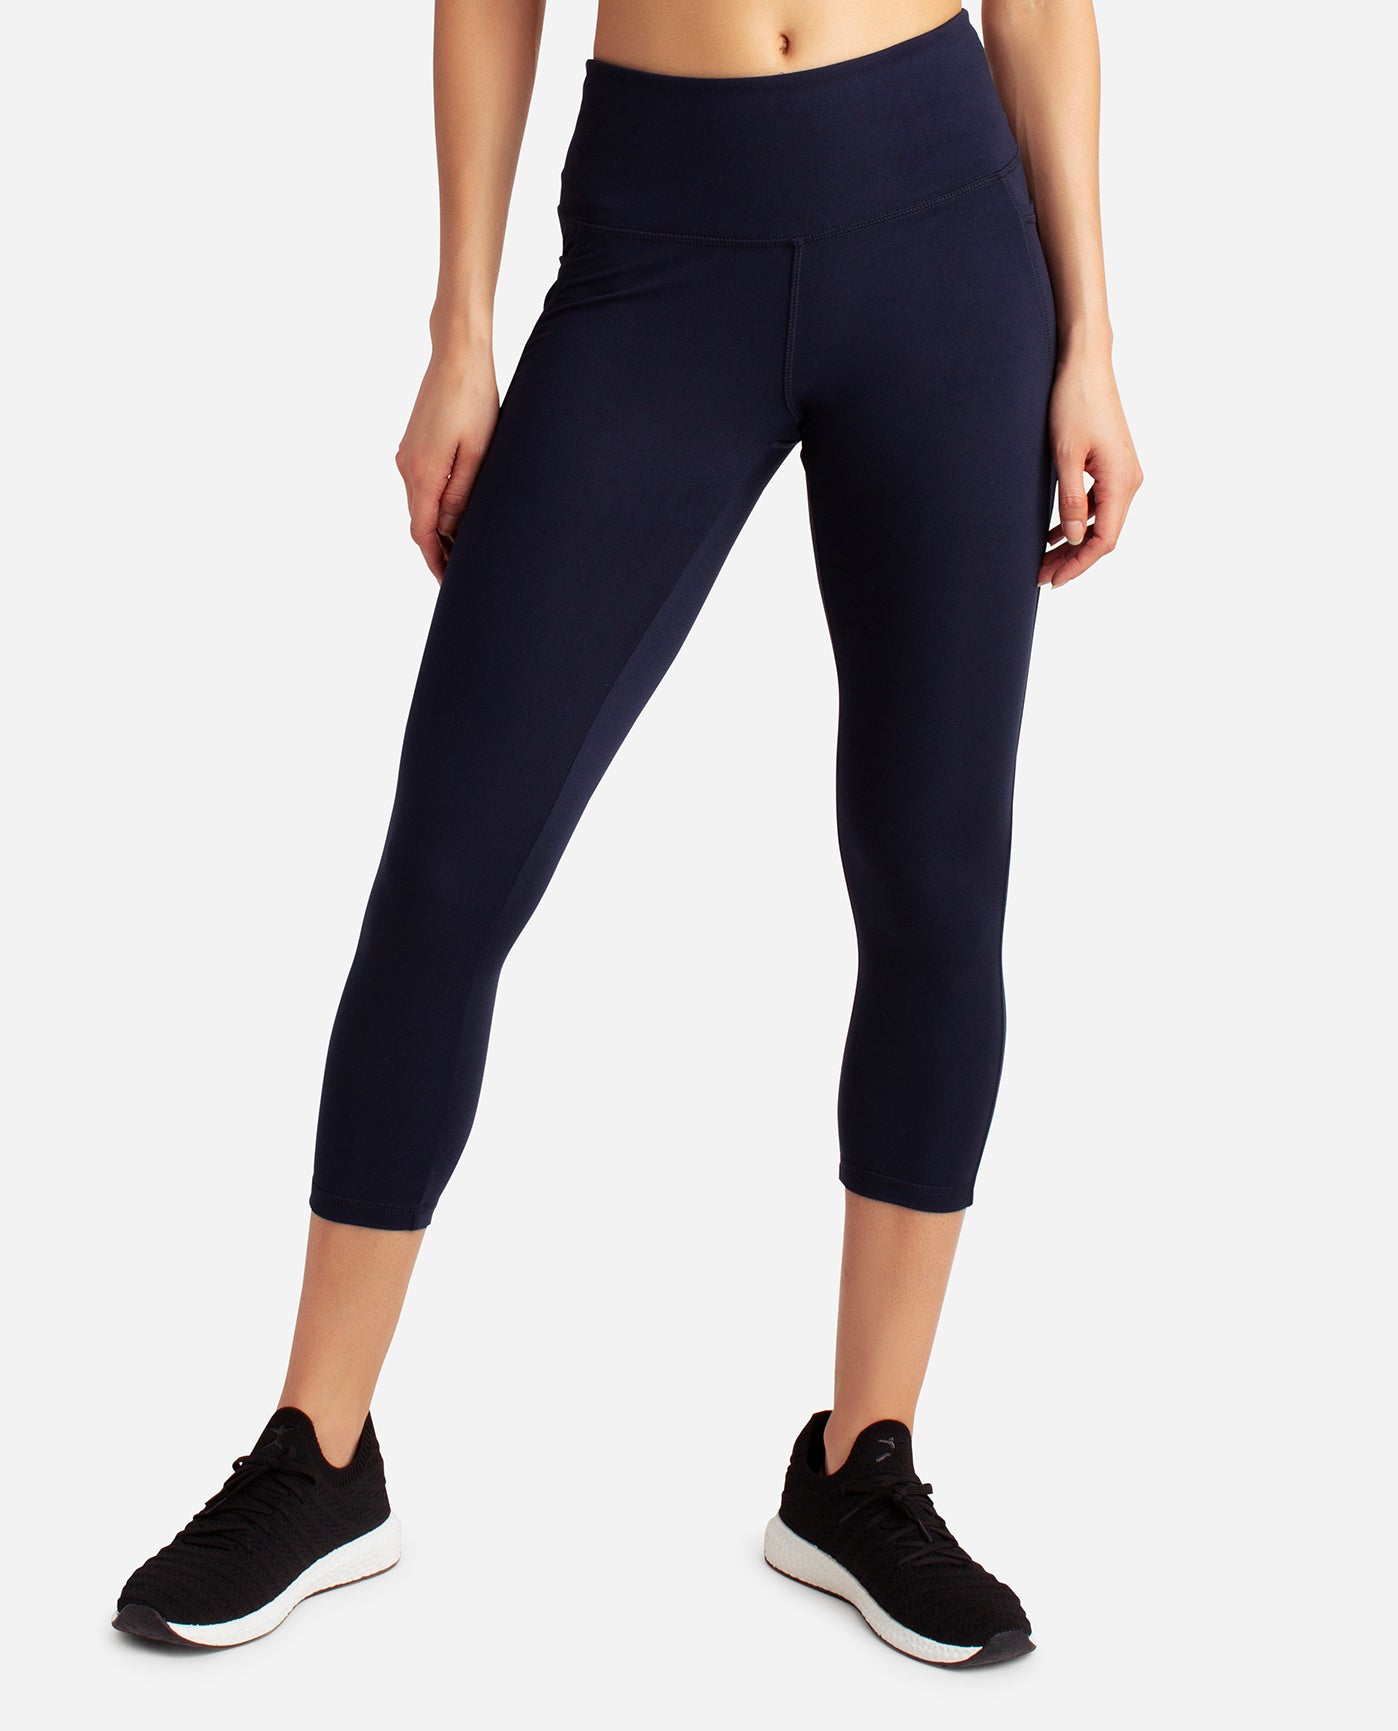 Danskin Women's Ankle Crop leggings Sz Medium - $15 (74% Off Retail) - From  Allisonand